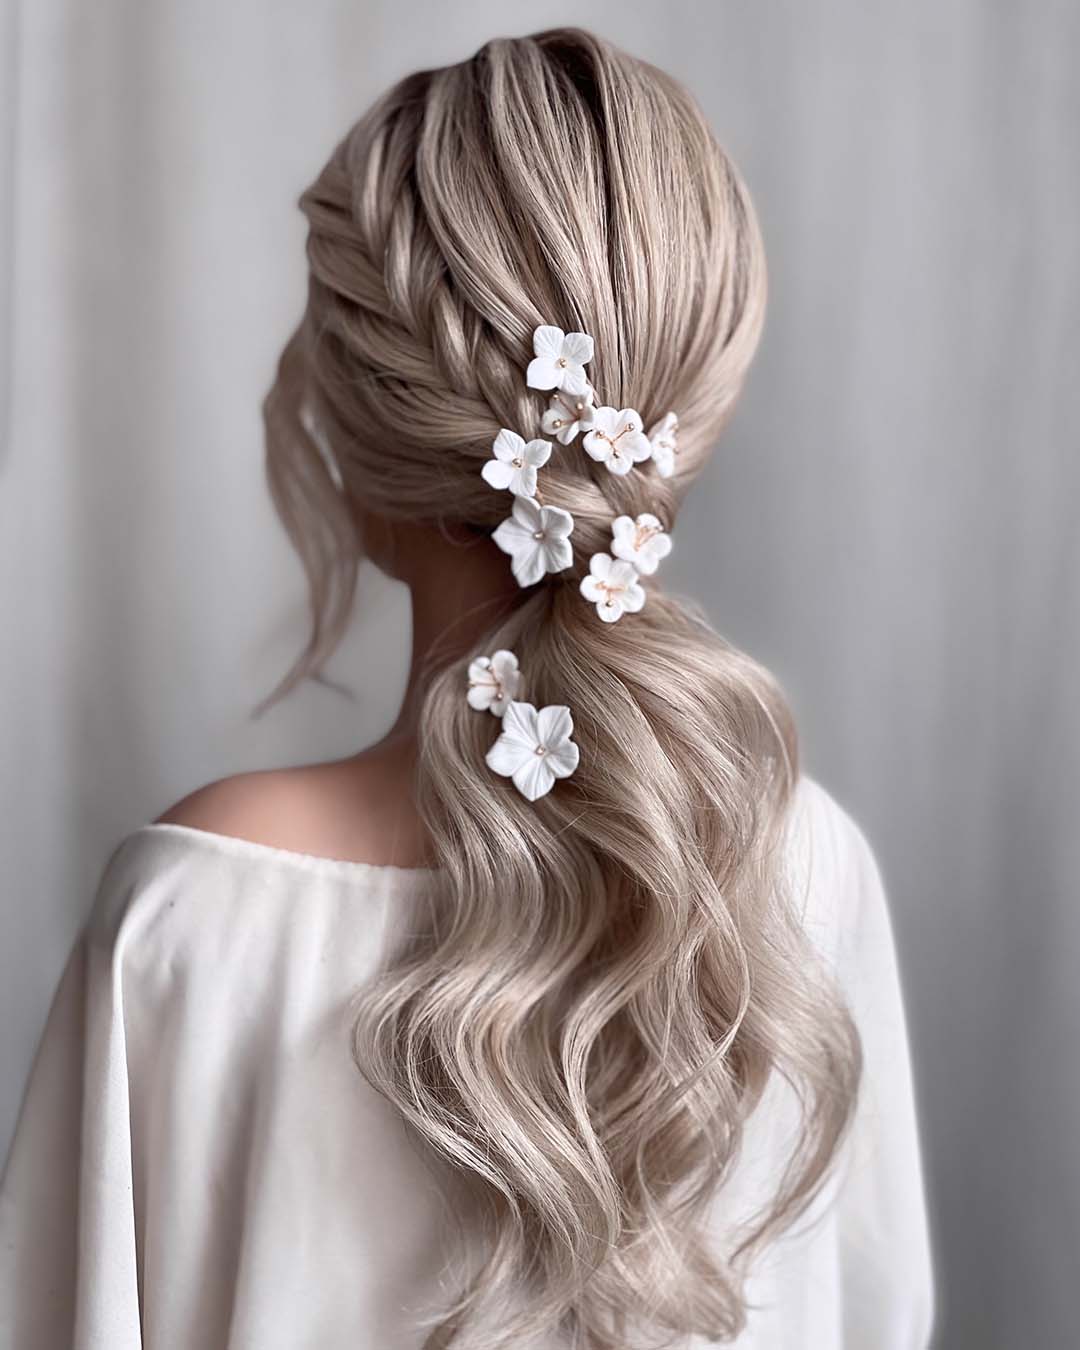 pony tail hairstyles wedding wavy low with side braid white flower pins kasia_fortuna